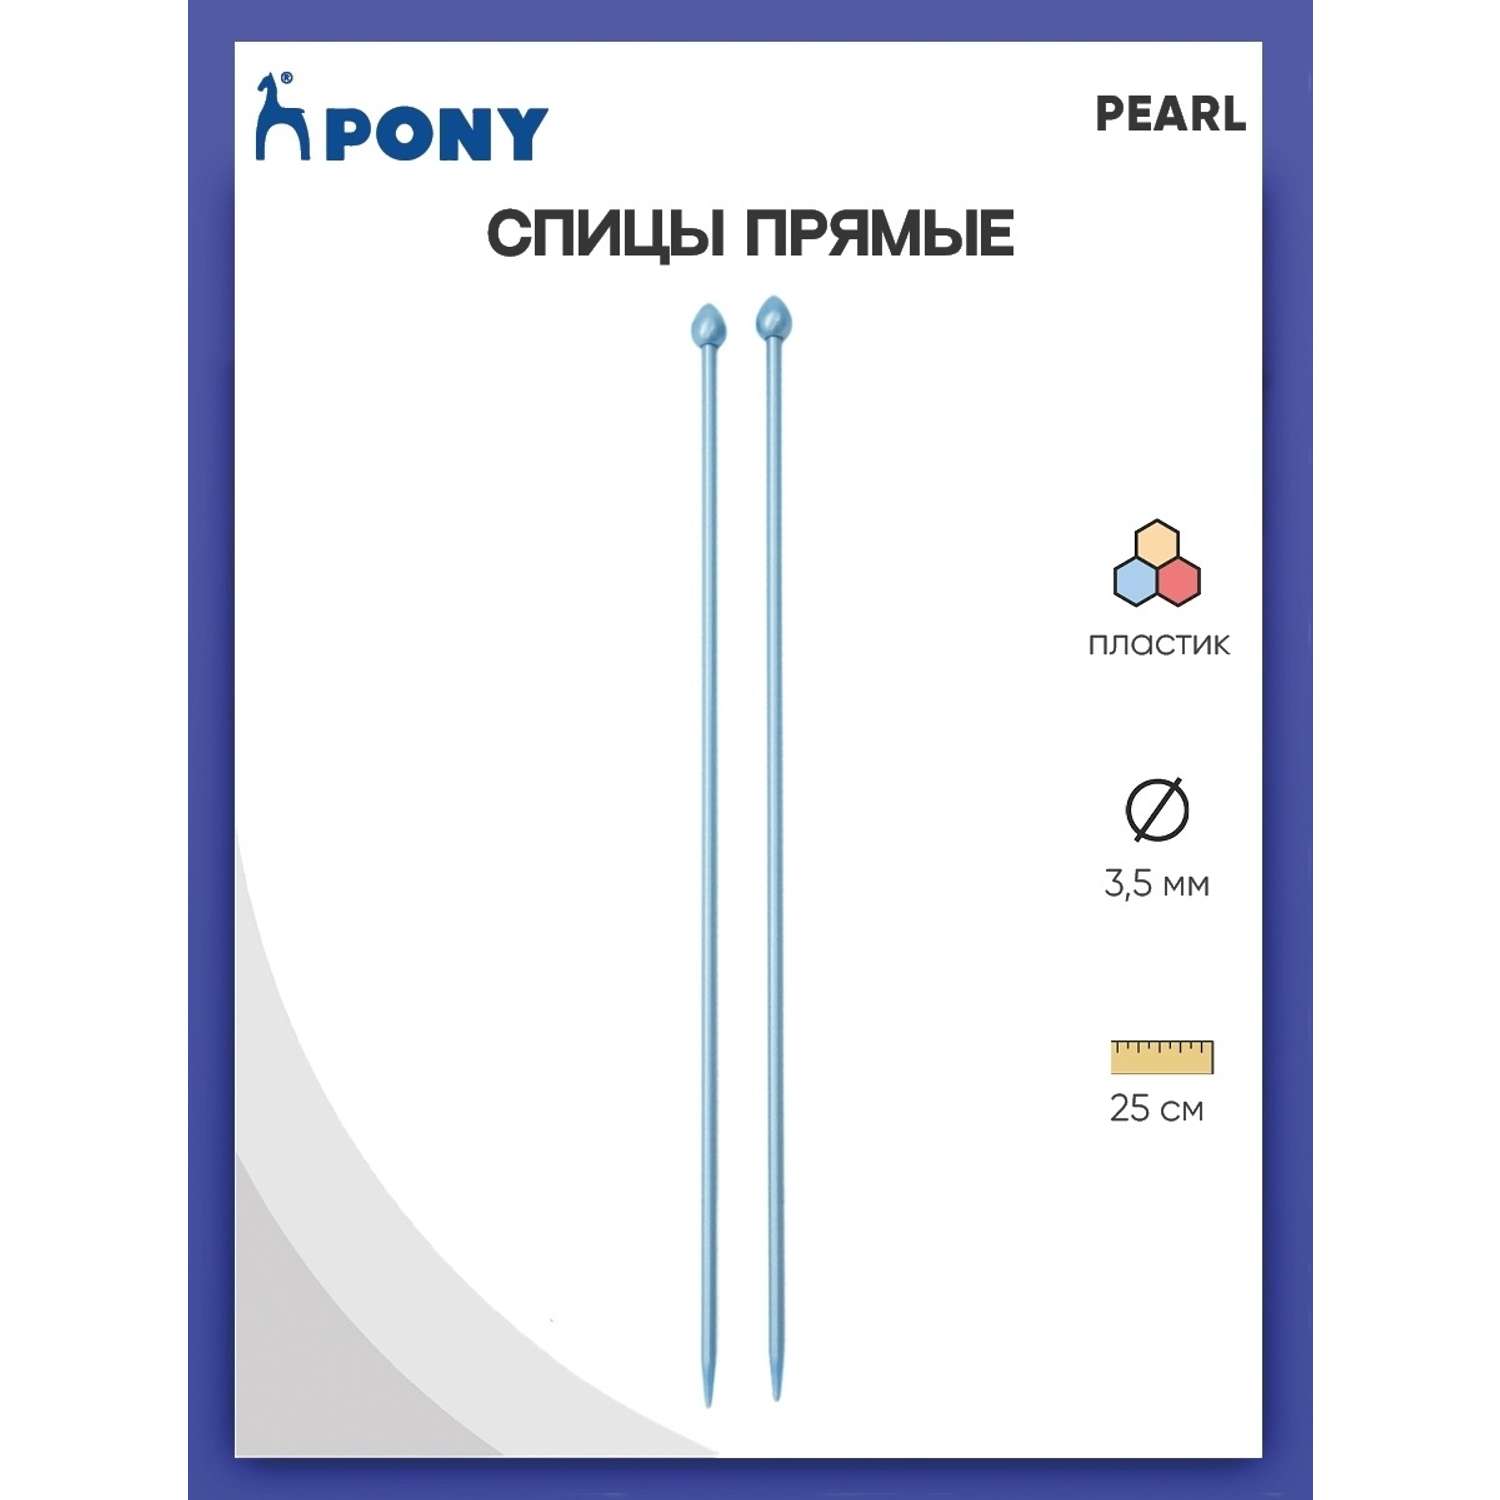 Спицы прямые Pony пластиковые для начинающих PEARL 3.5 мм 25 см синие 31626 - фото 1